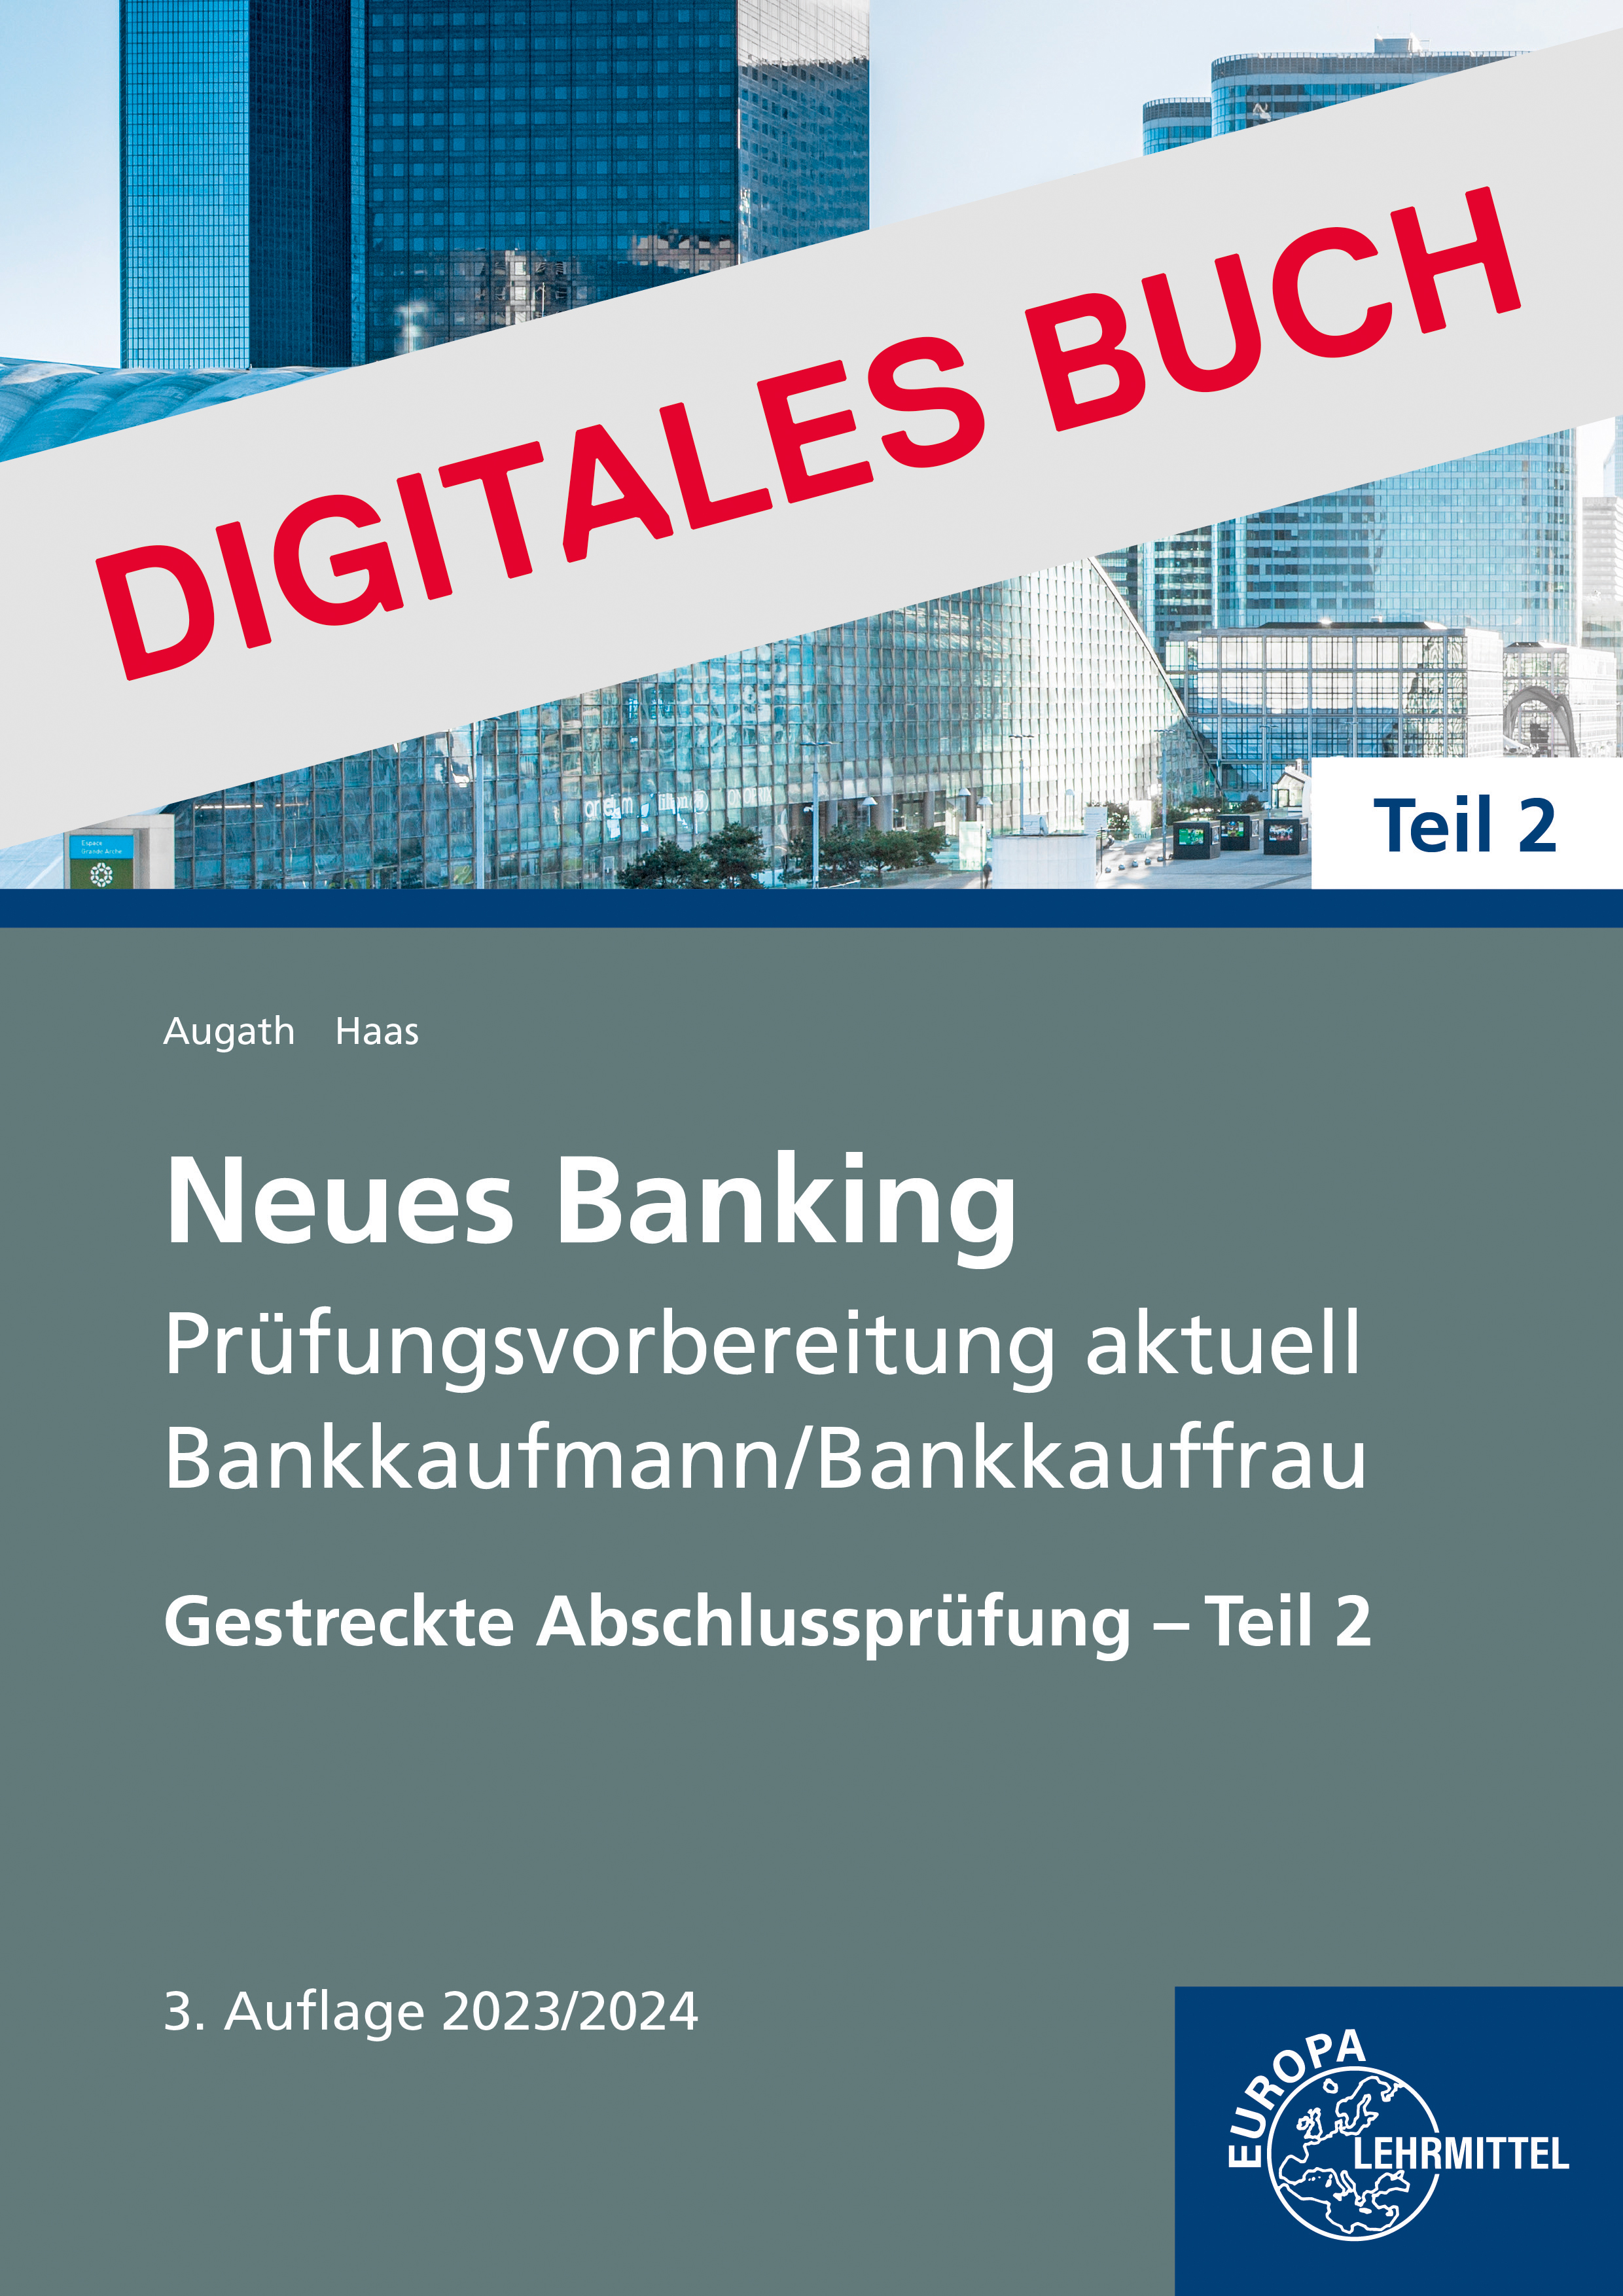 Neues Banking Prüfungsvorbereitung - Gestr. Abschlusspr. Teil 2 Dig. Buch